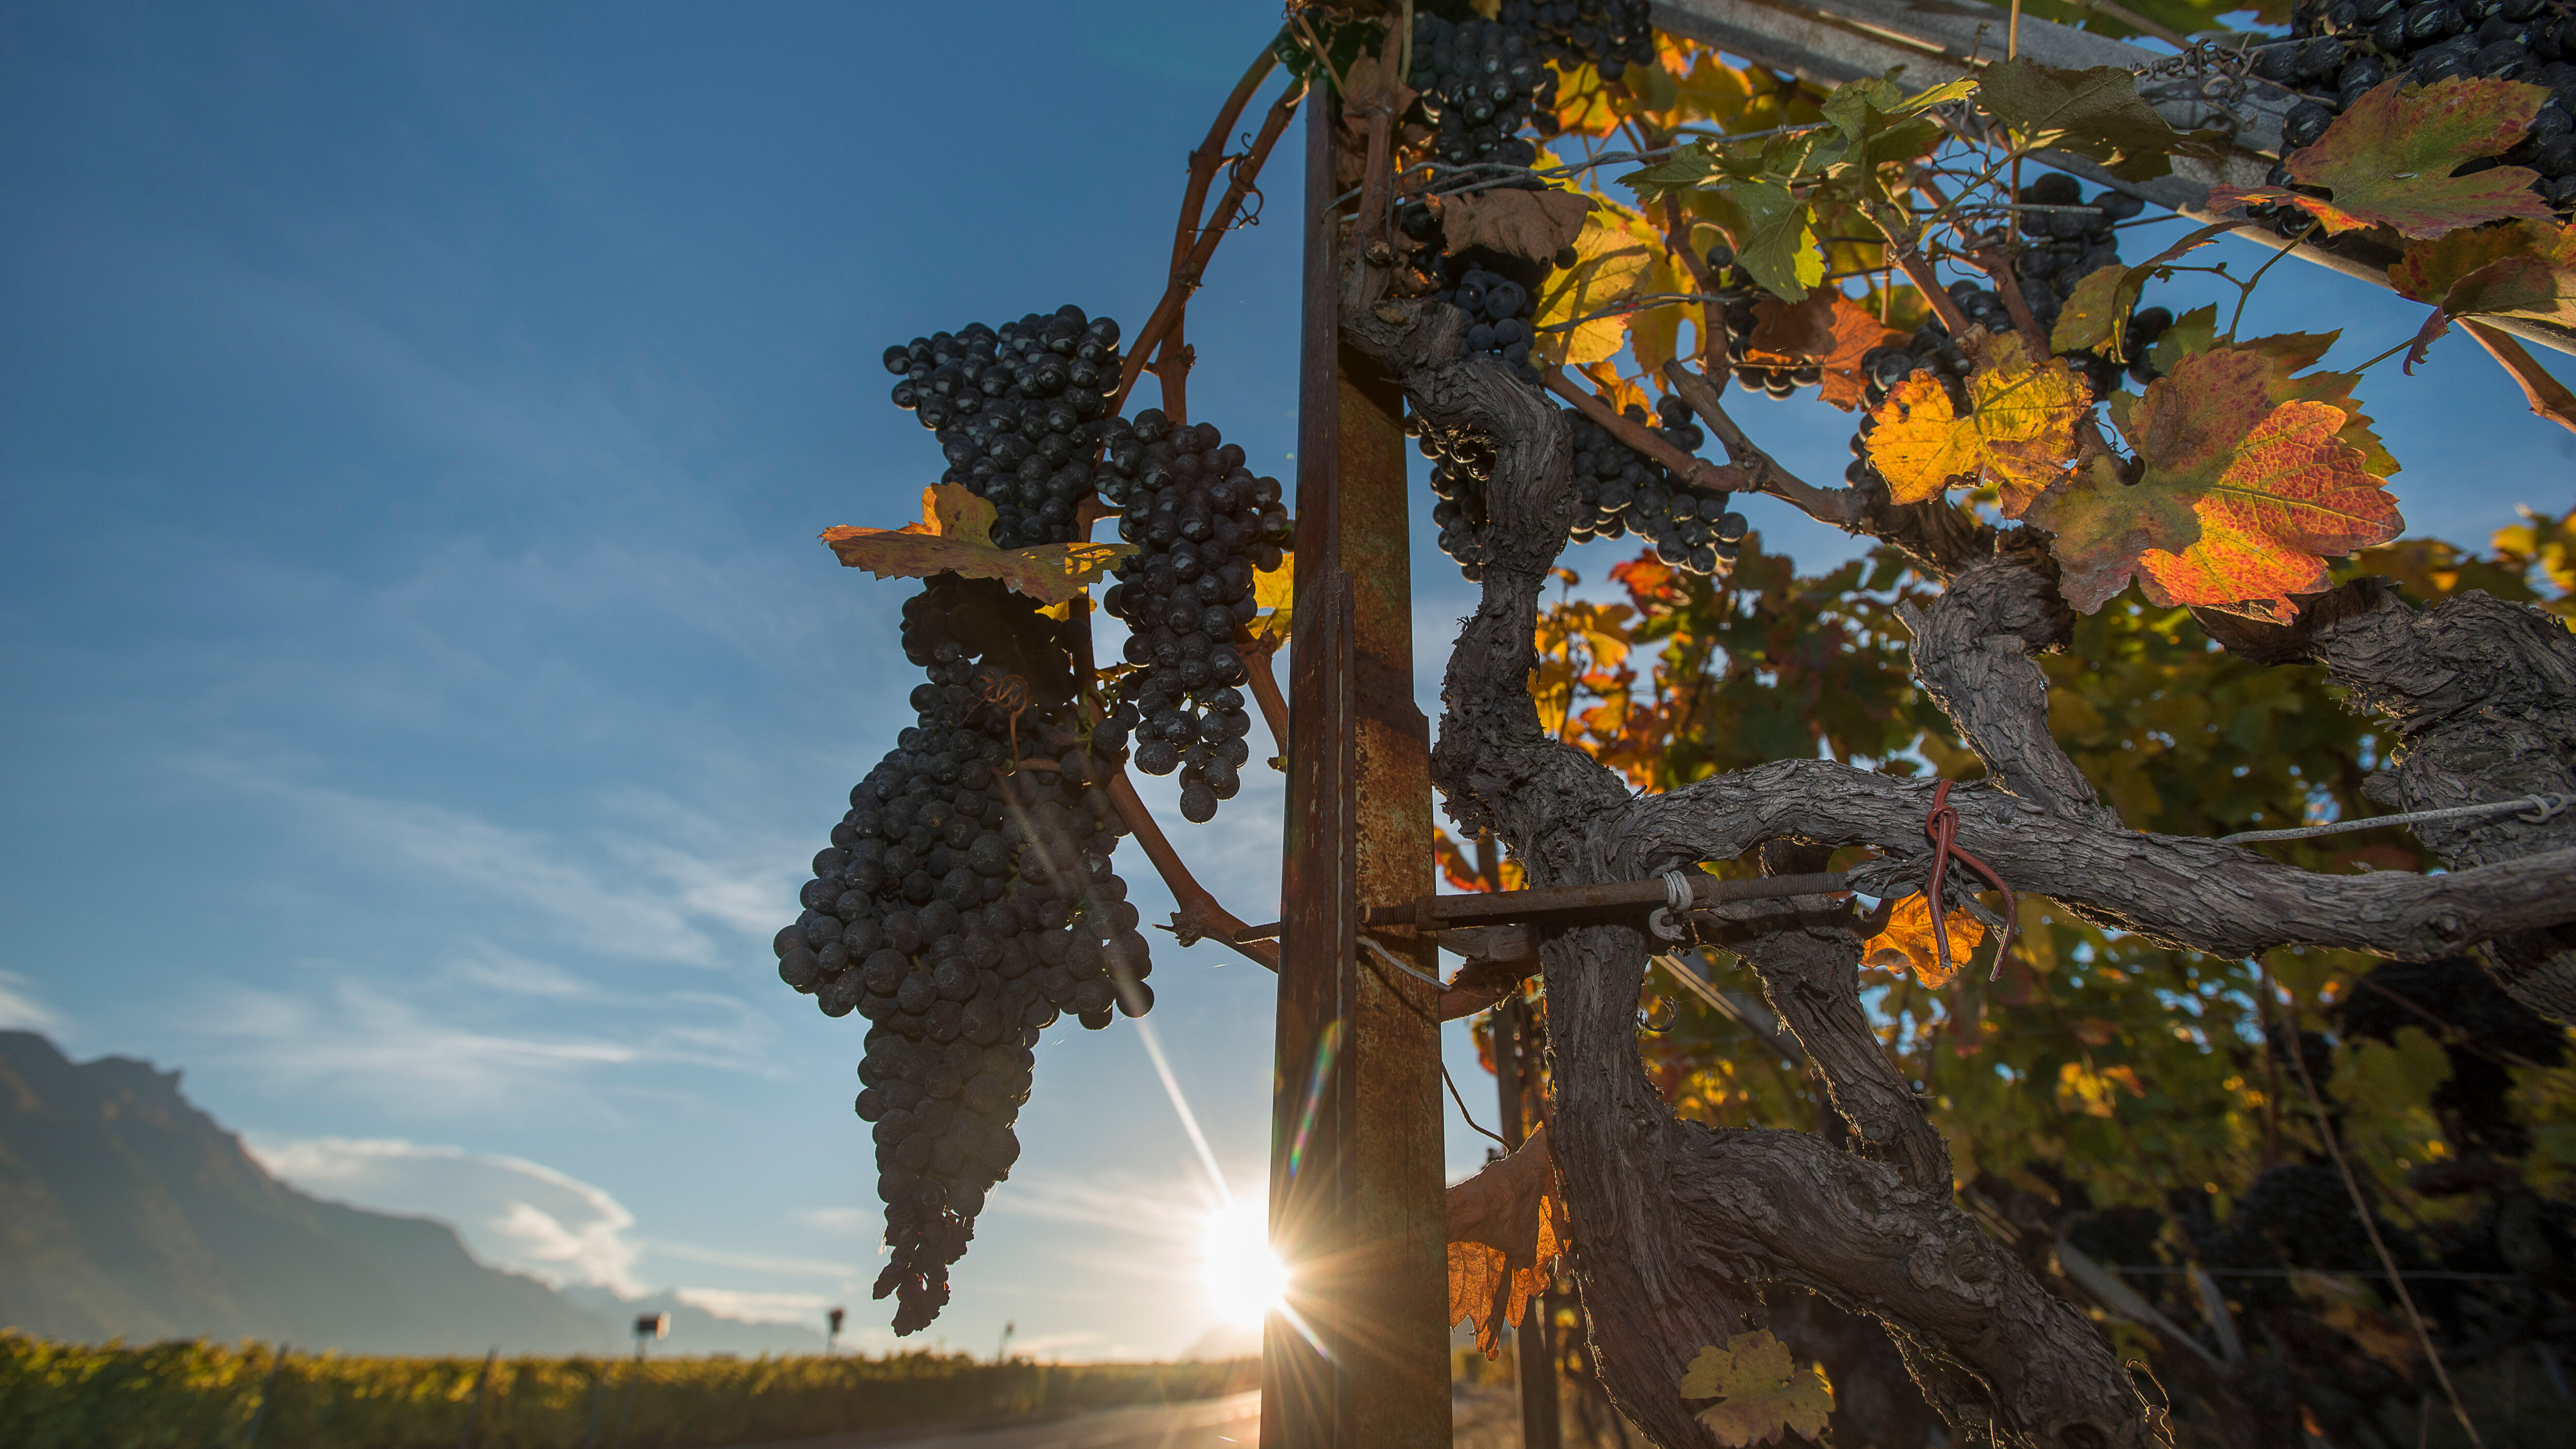 L'été 2022 a gorgé les raisins de soleil. Photo: Siffert / weinweltfoto.ch